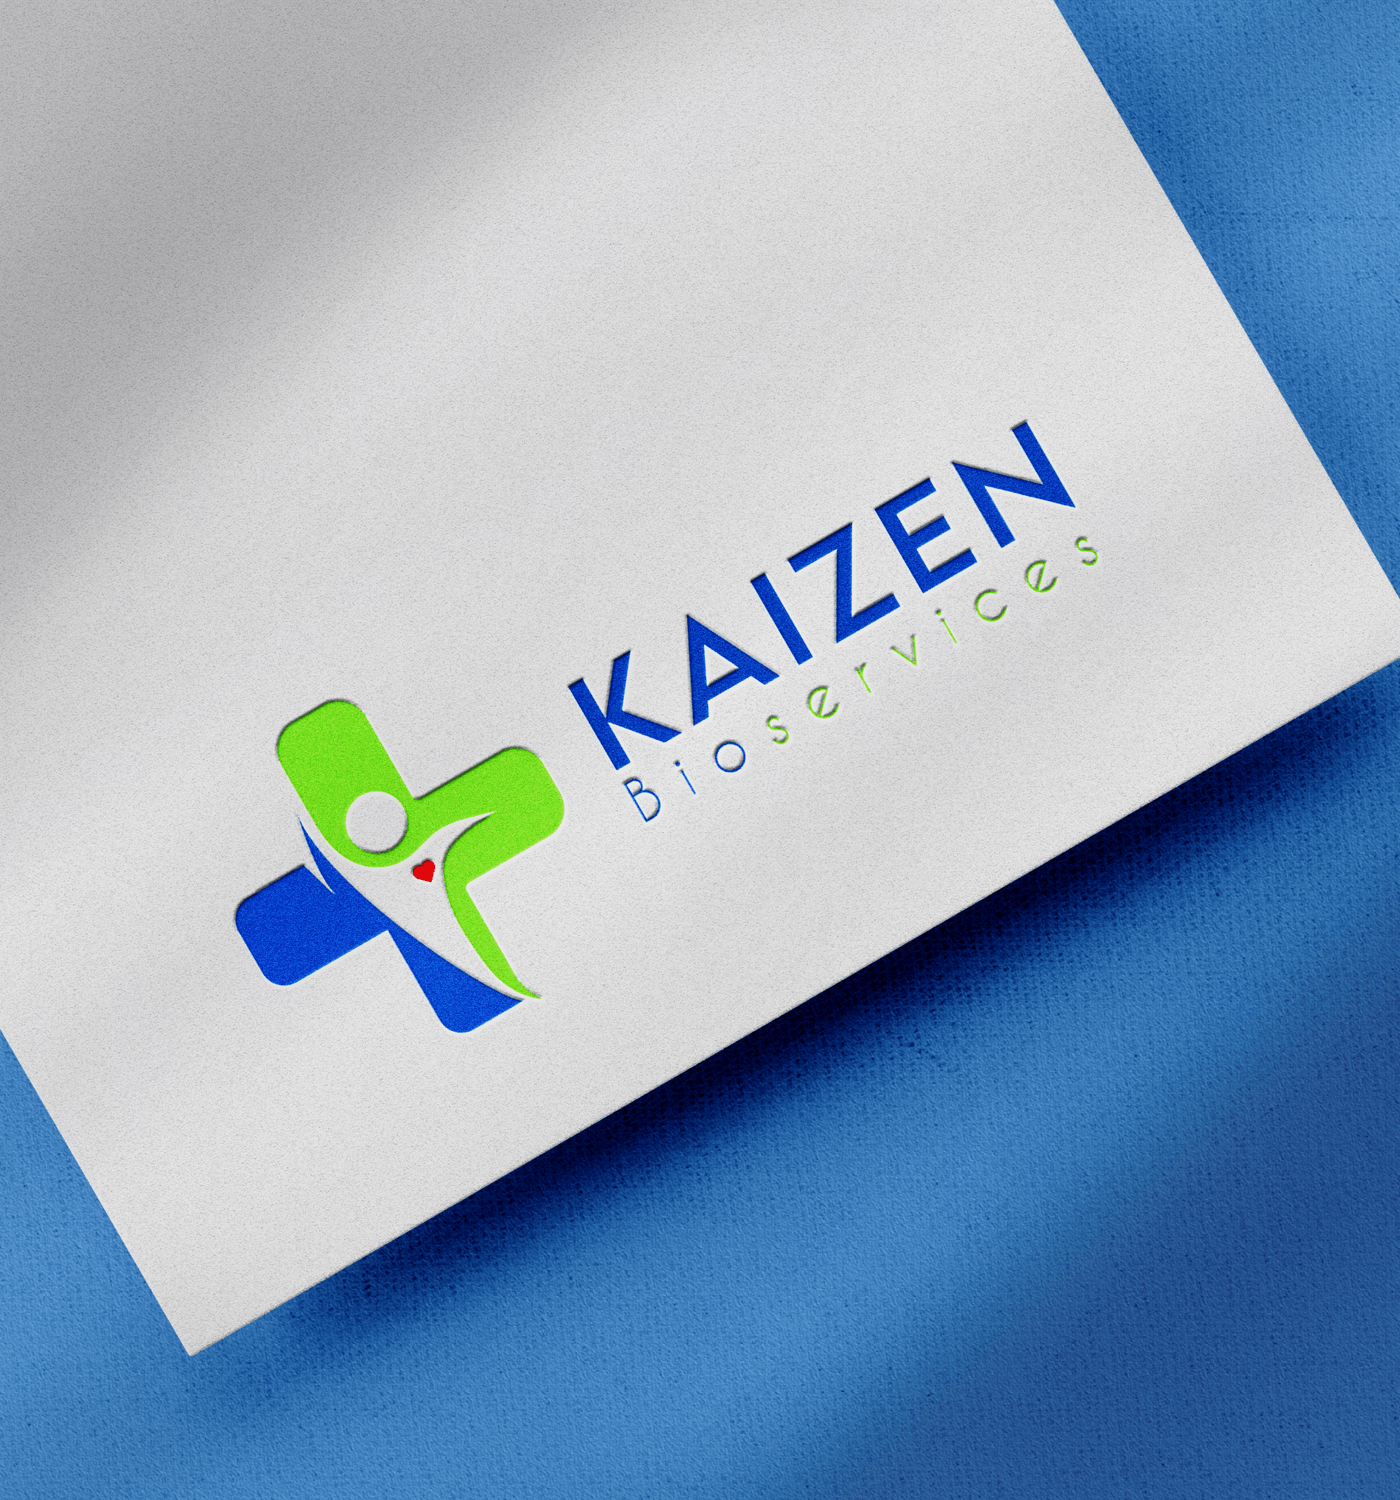 Kaizen Bio Services